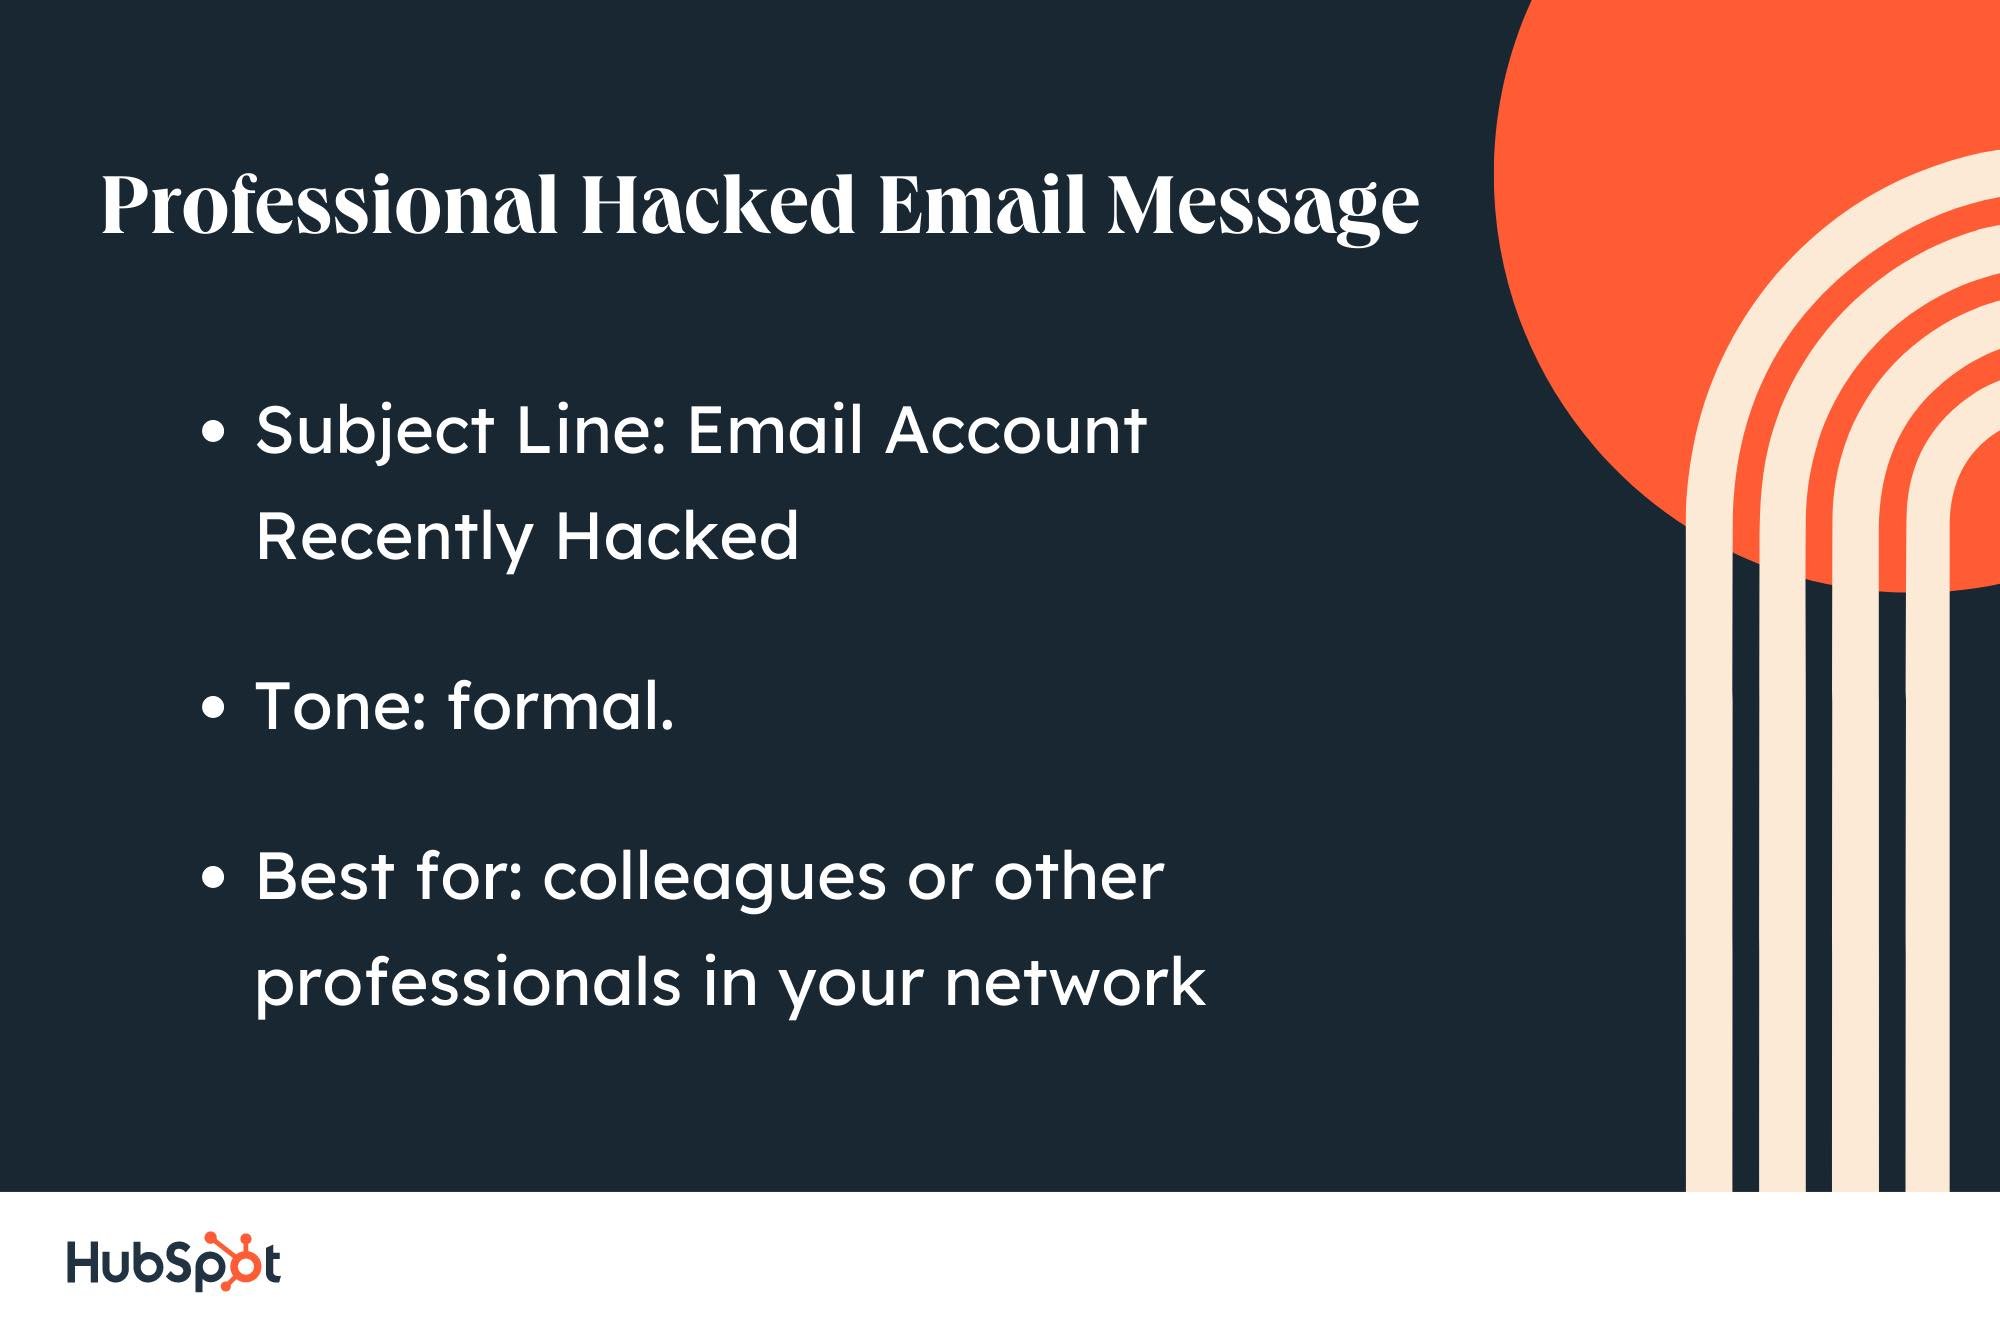 نامه نمونه برای ایمیل هک شده: خط موضوع، حساب ایمیل اخیرا هک شده است.  لحن، رسمی؛  بهترین برای همکاران